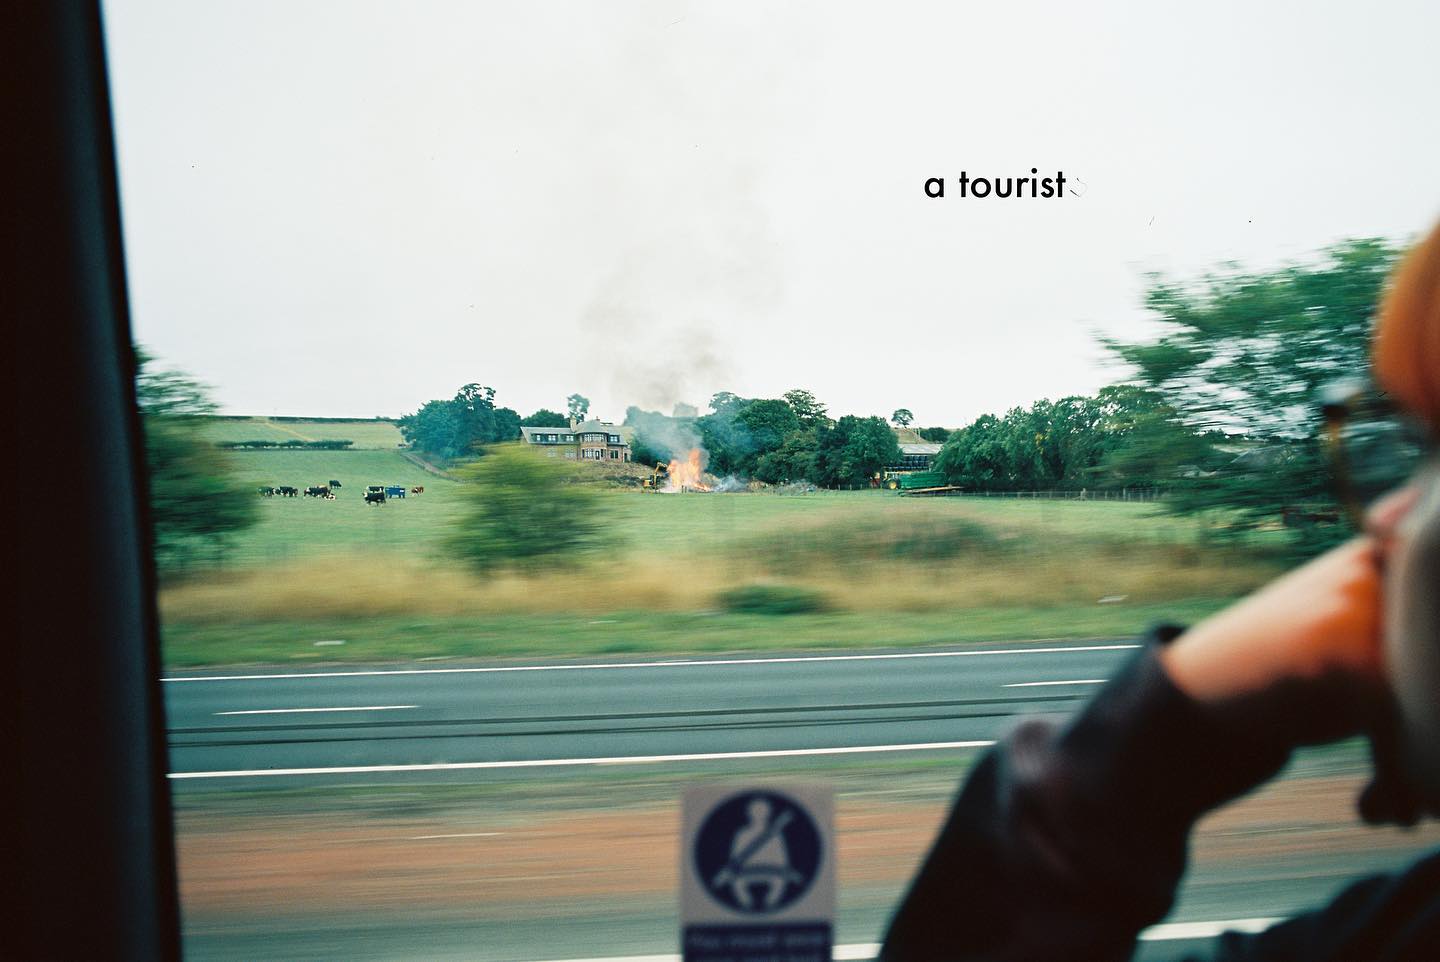 Cover image for Rich Hamilton's audio soundscape, "A Tourist."